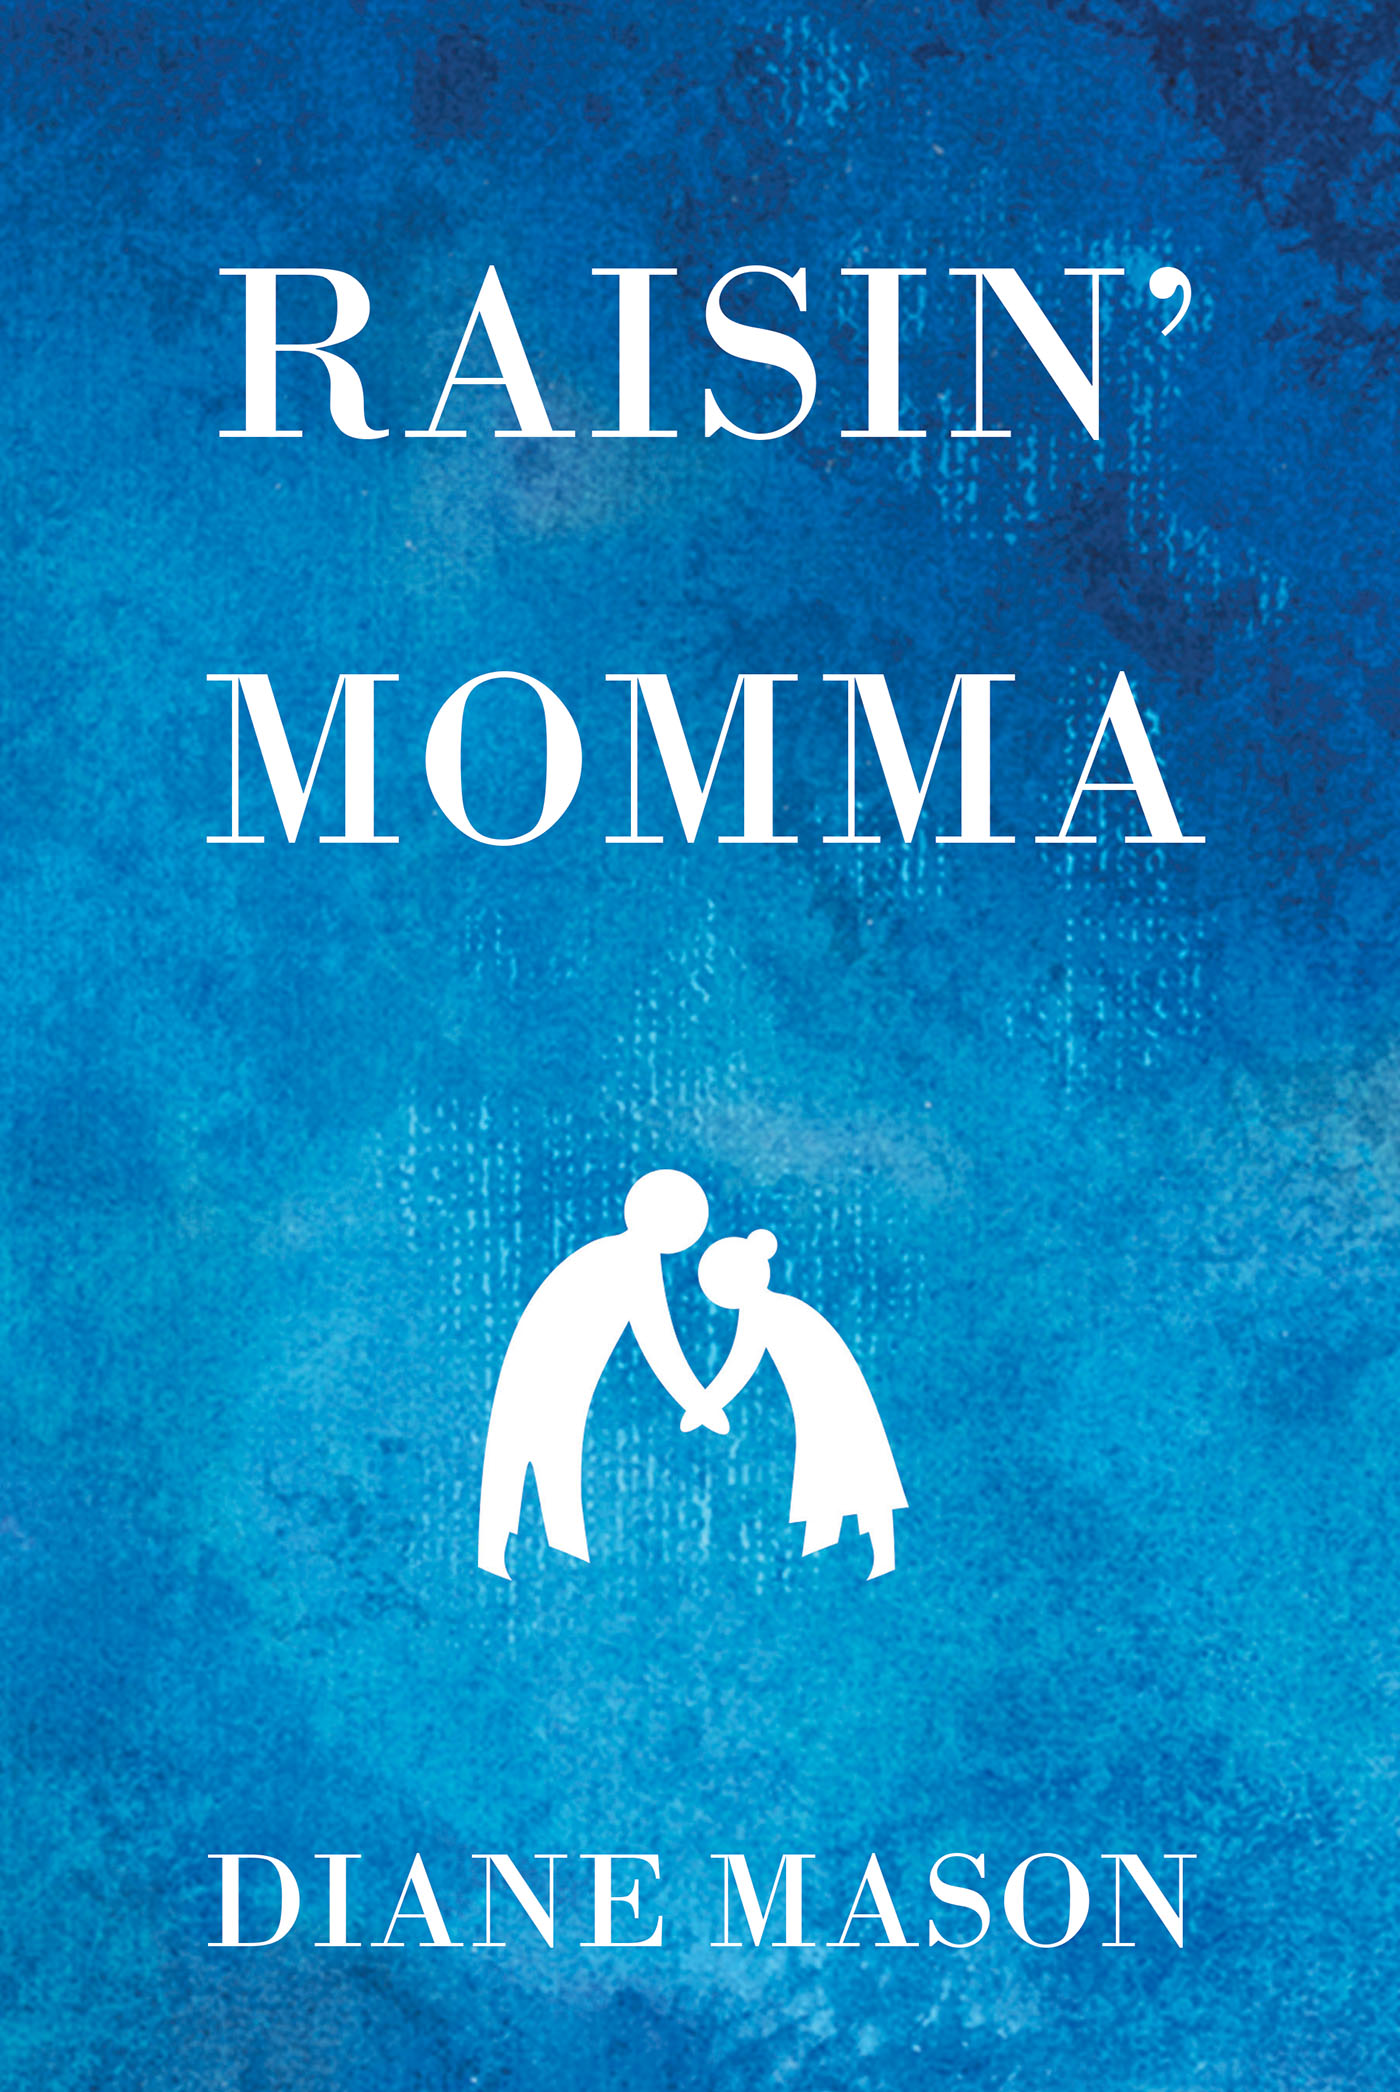 Raisin' Momma Cover Image